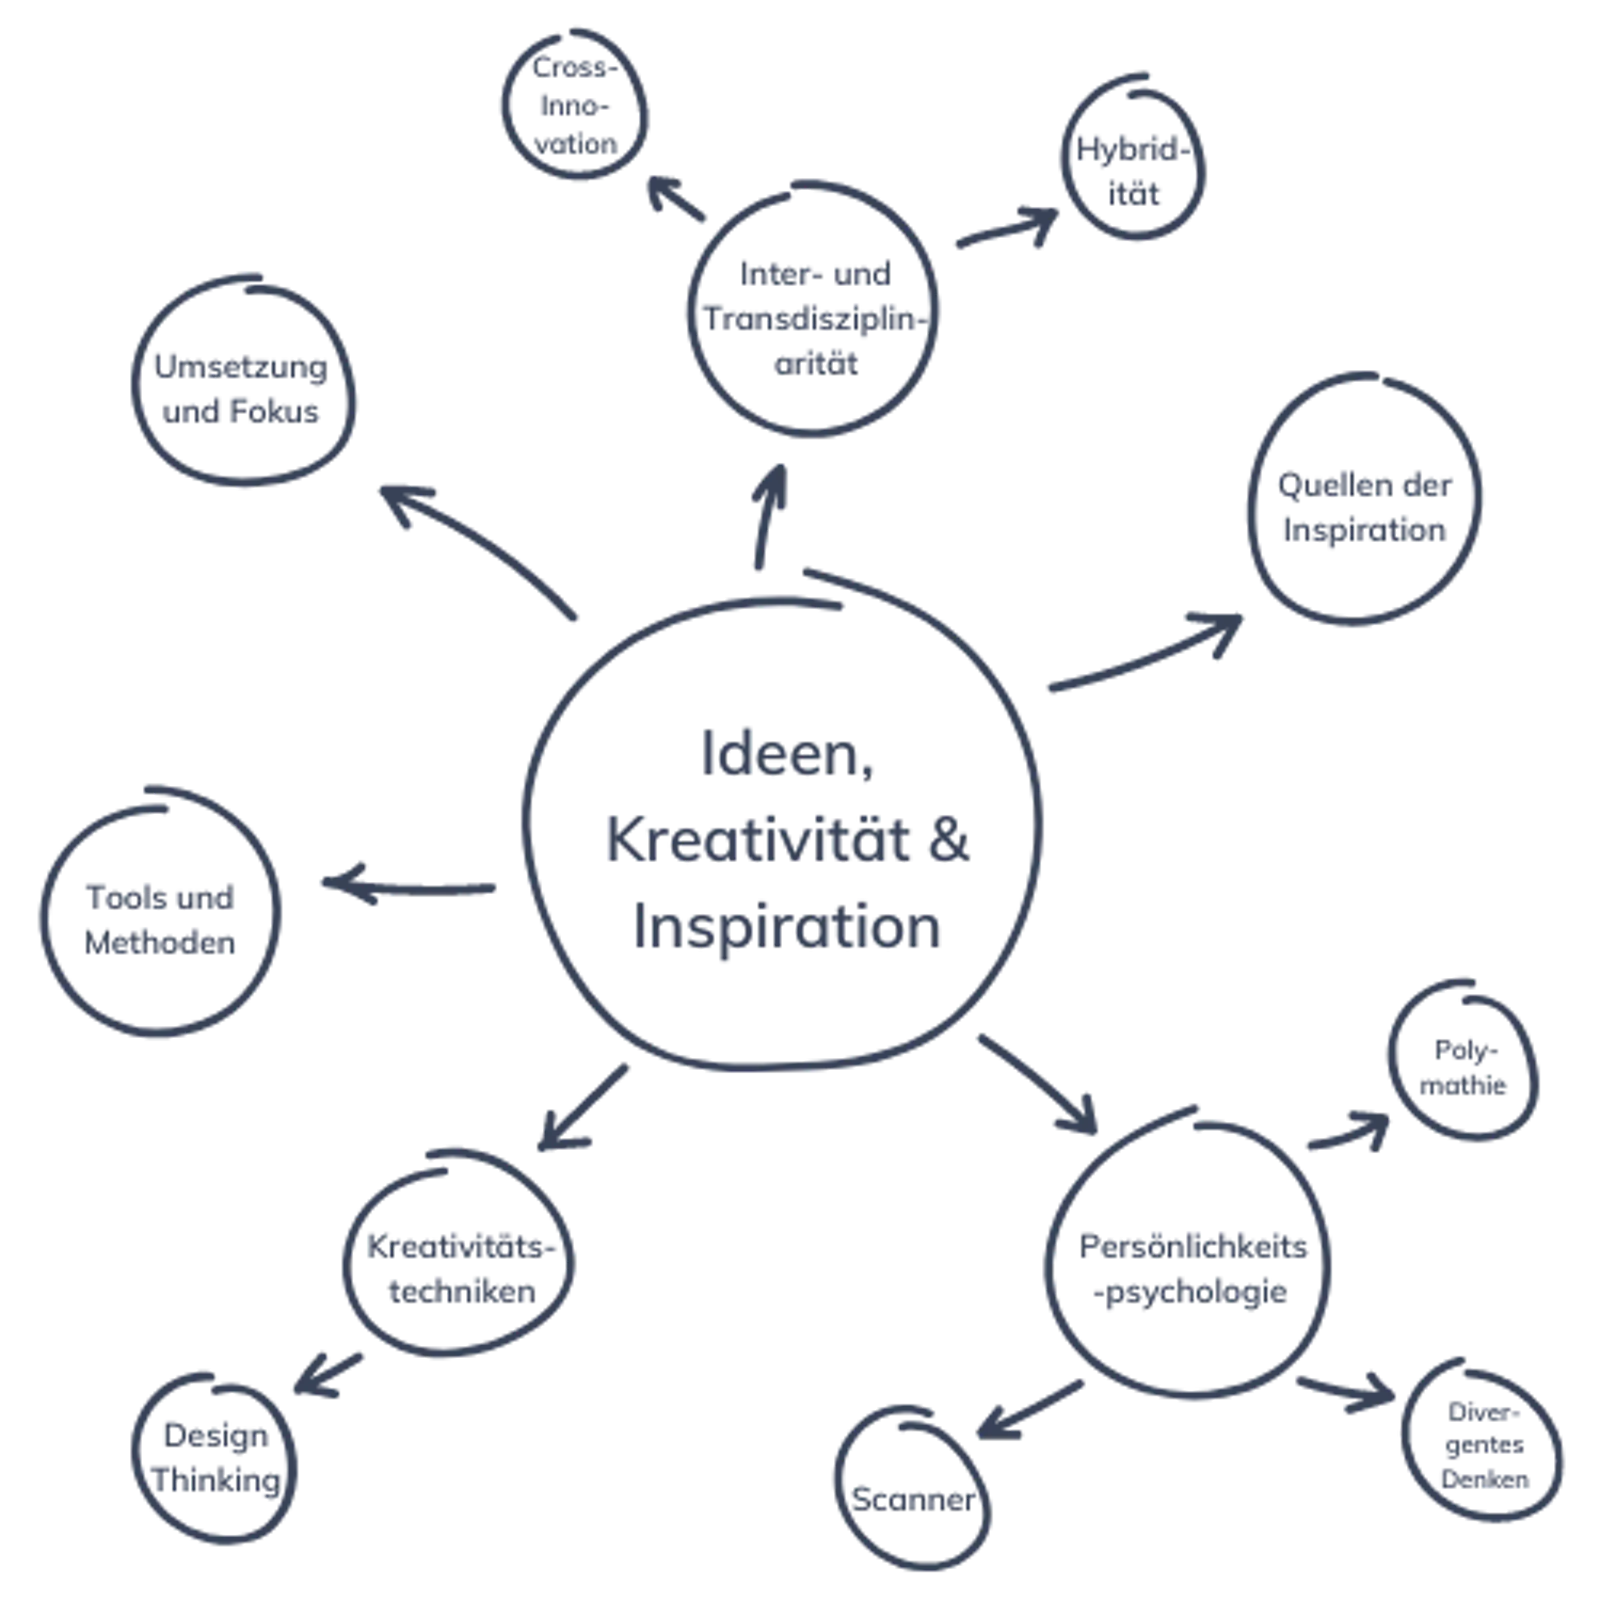 Mindmap im Zentrum mit "Ideen, Kreativität & Inspiration" äußere Begriffe: Inter- und Transdisziplinarität, Hybridität, Cross-Innovation, Umsetzung und Fokus, Tools und Methoden, Kreativitätstechniken, Design Thinking, Scanner, Persönlichkeitpsychologie, Polymathie, Divergentes Denken, Quellen der Inspiration